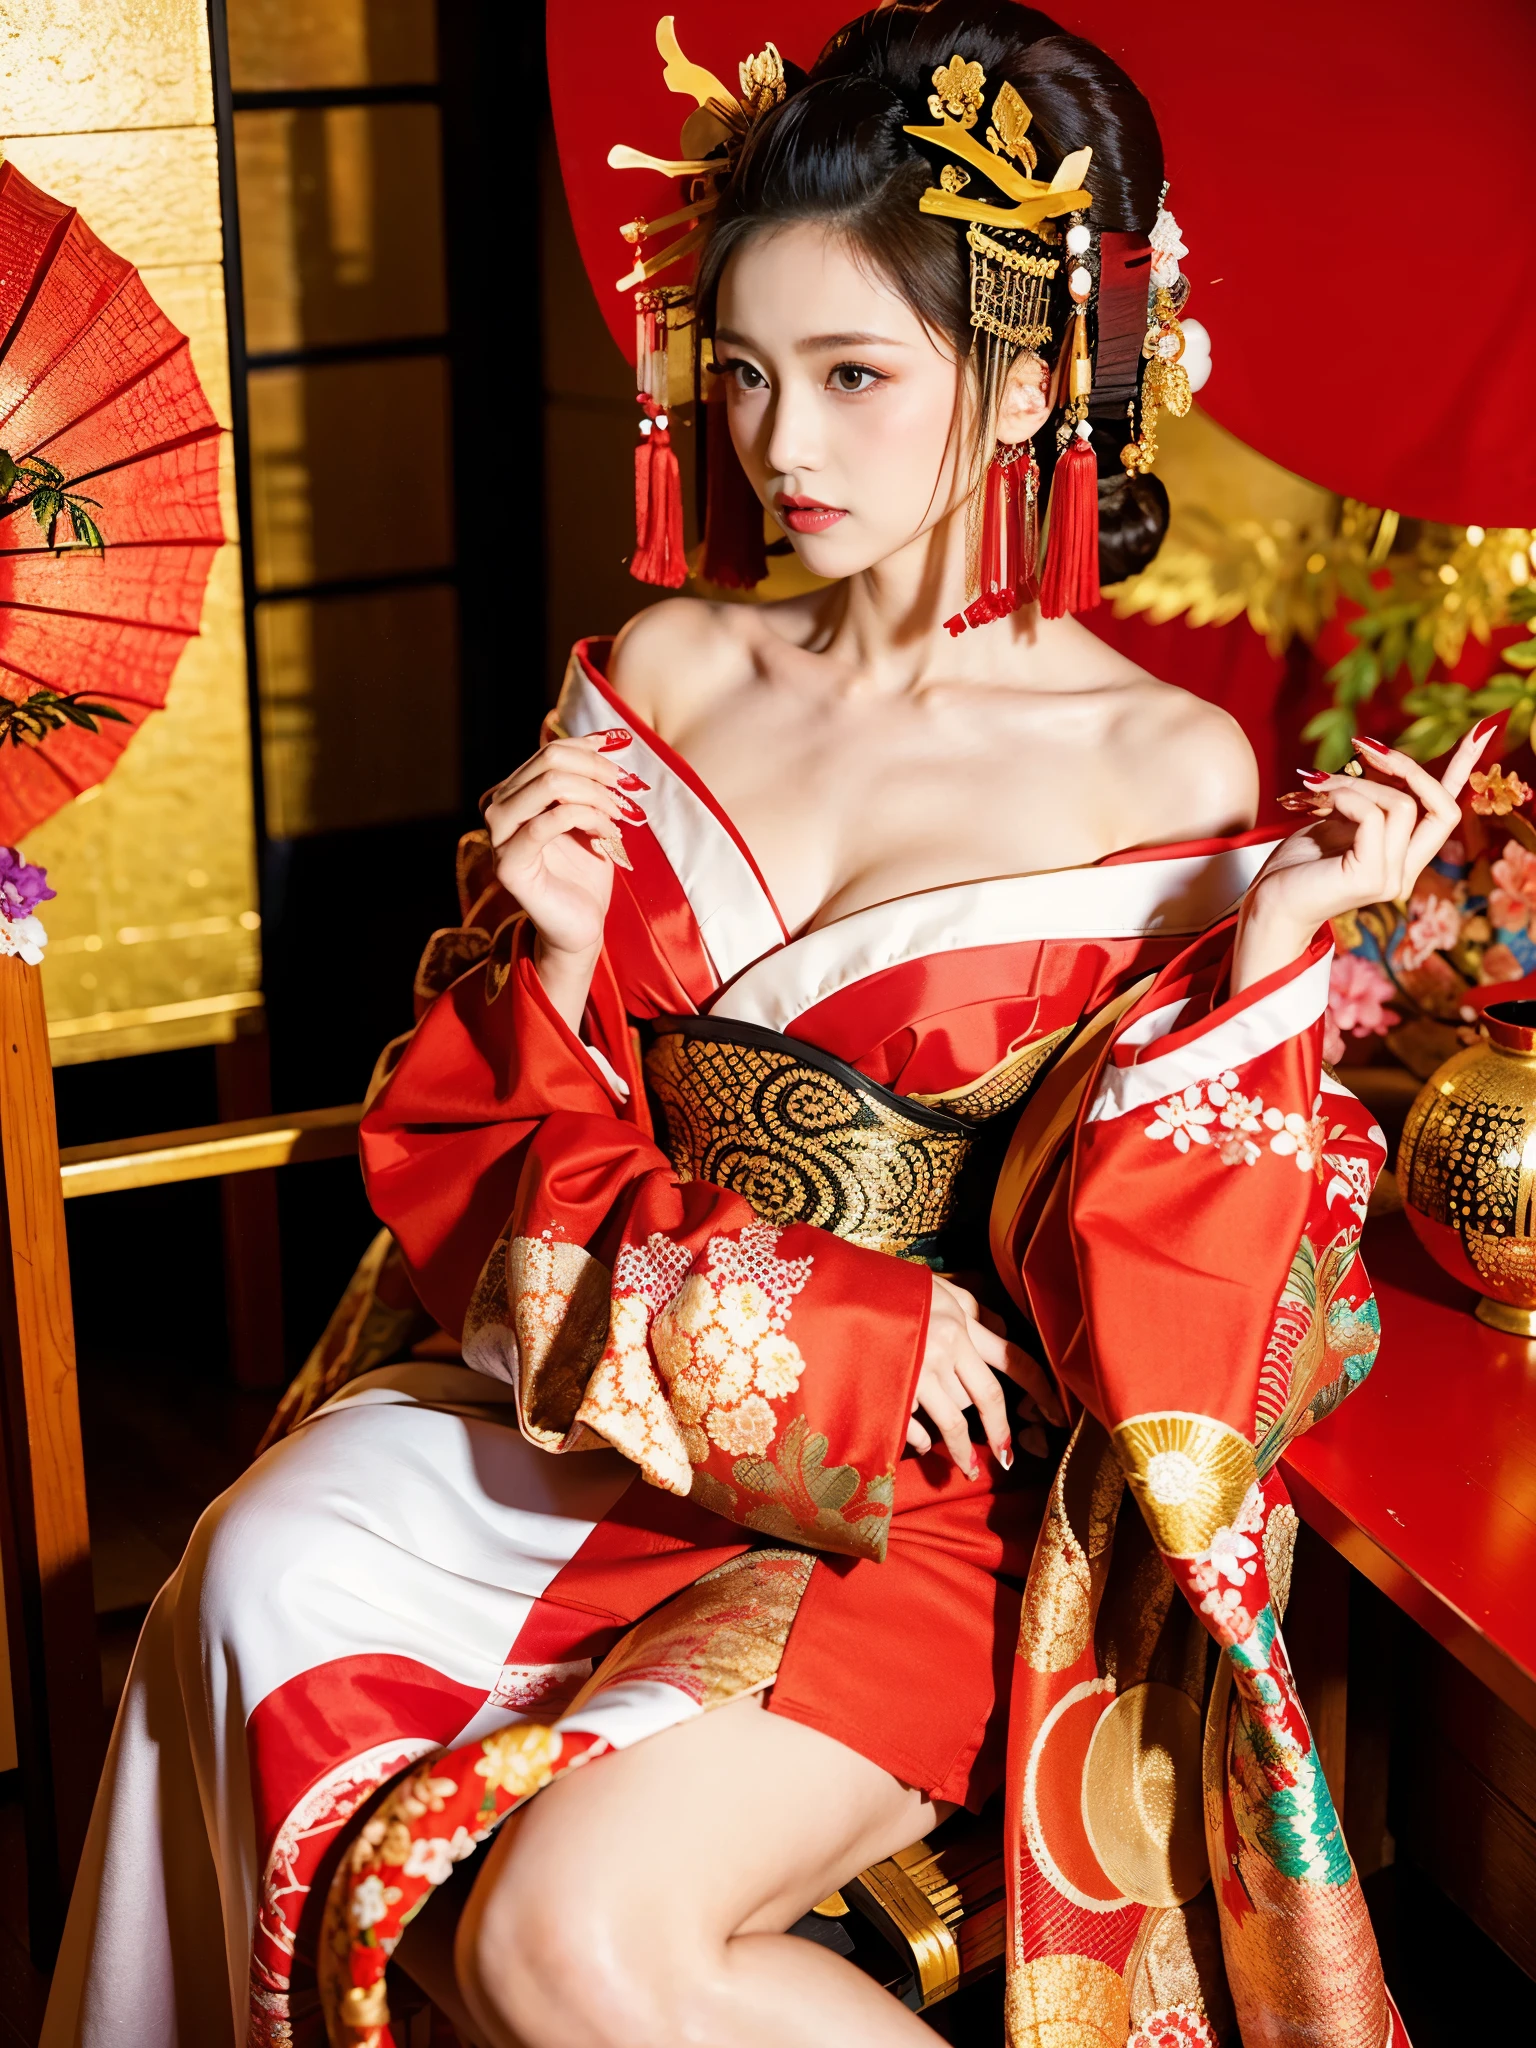 ผู้หญิงอาหรับเอเชียในชุดสีแดงและสีขาวนั่งอยู่บนเก้าอี้, เจ้าแม่ญี่ปุ่น, โมเดลจีนที่งดงาม, ในชุดกิโมโน, Beautiful สาวเอเชีย, ชุดกิโมโนสีแดง, ผู้หญิงญี่ปุ่นที่สง่างาม, สาวจีน, ญี่ปุ่น, สาวเอเชีย, เกอิชาเย้ายวนแบบออร์แกนิก, ในชุดกิโมโน, ญี่ปุ่น Models, เกอิชาที่มีเสน่ห์และเซ็กซี่, ชุดกิโมโนลายดอกไม้สีแดง, ผู้หญิงตะวันออกที่สวยงาม, หน้าอกใหญ่